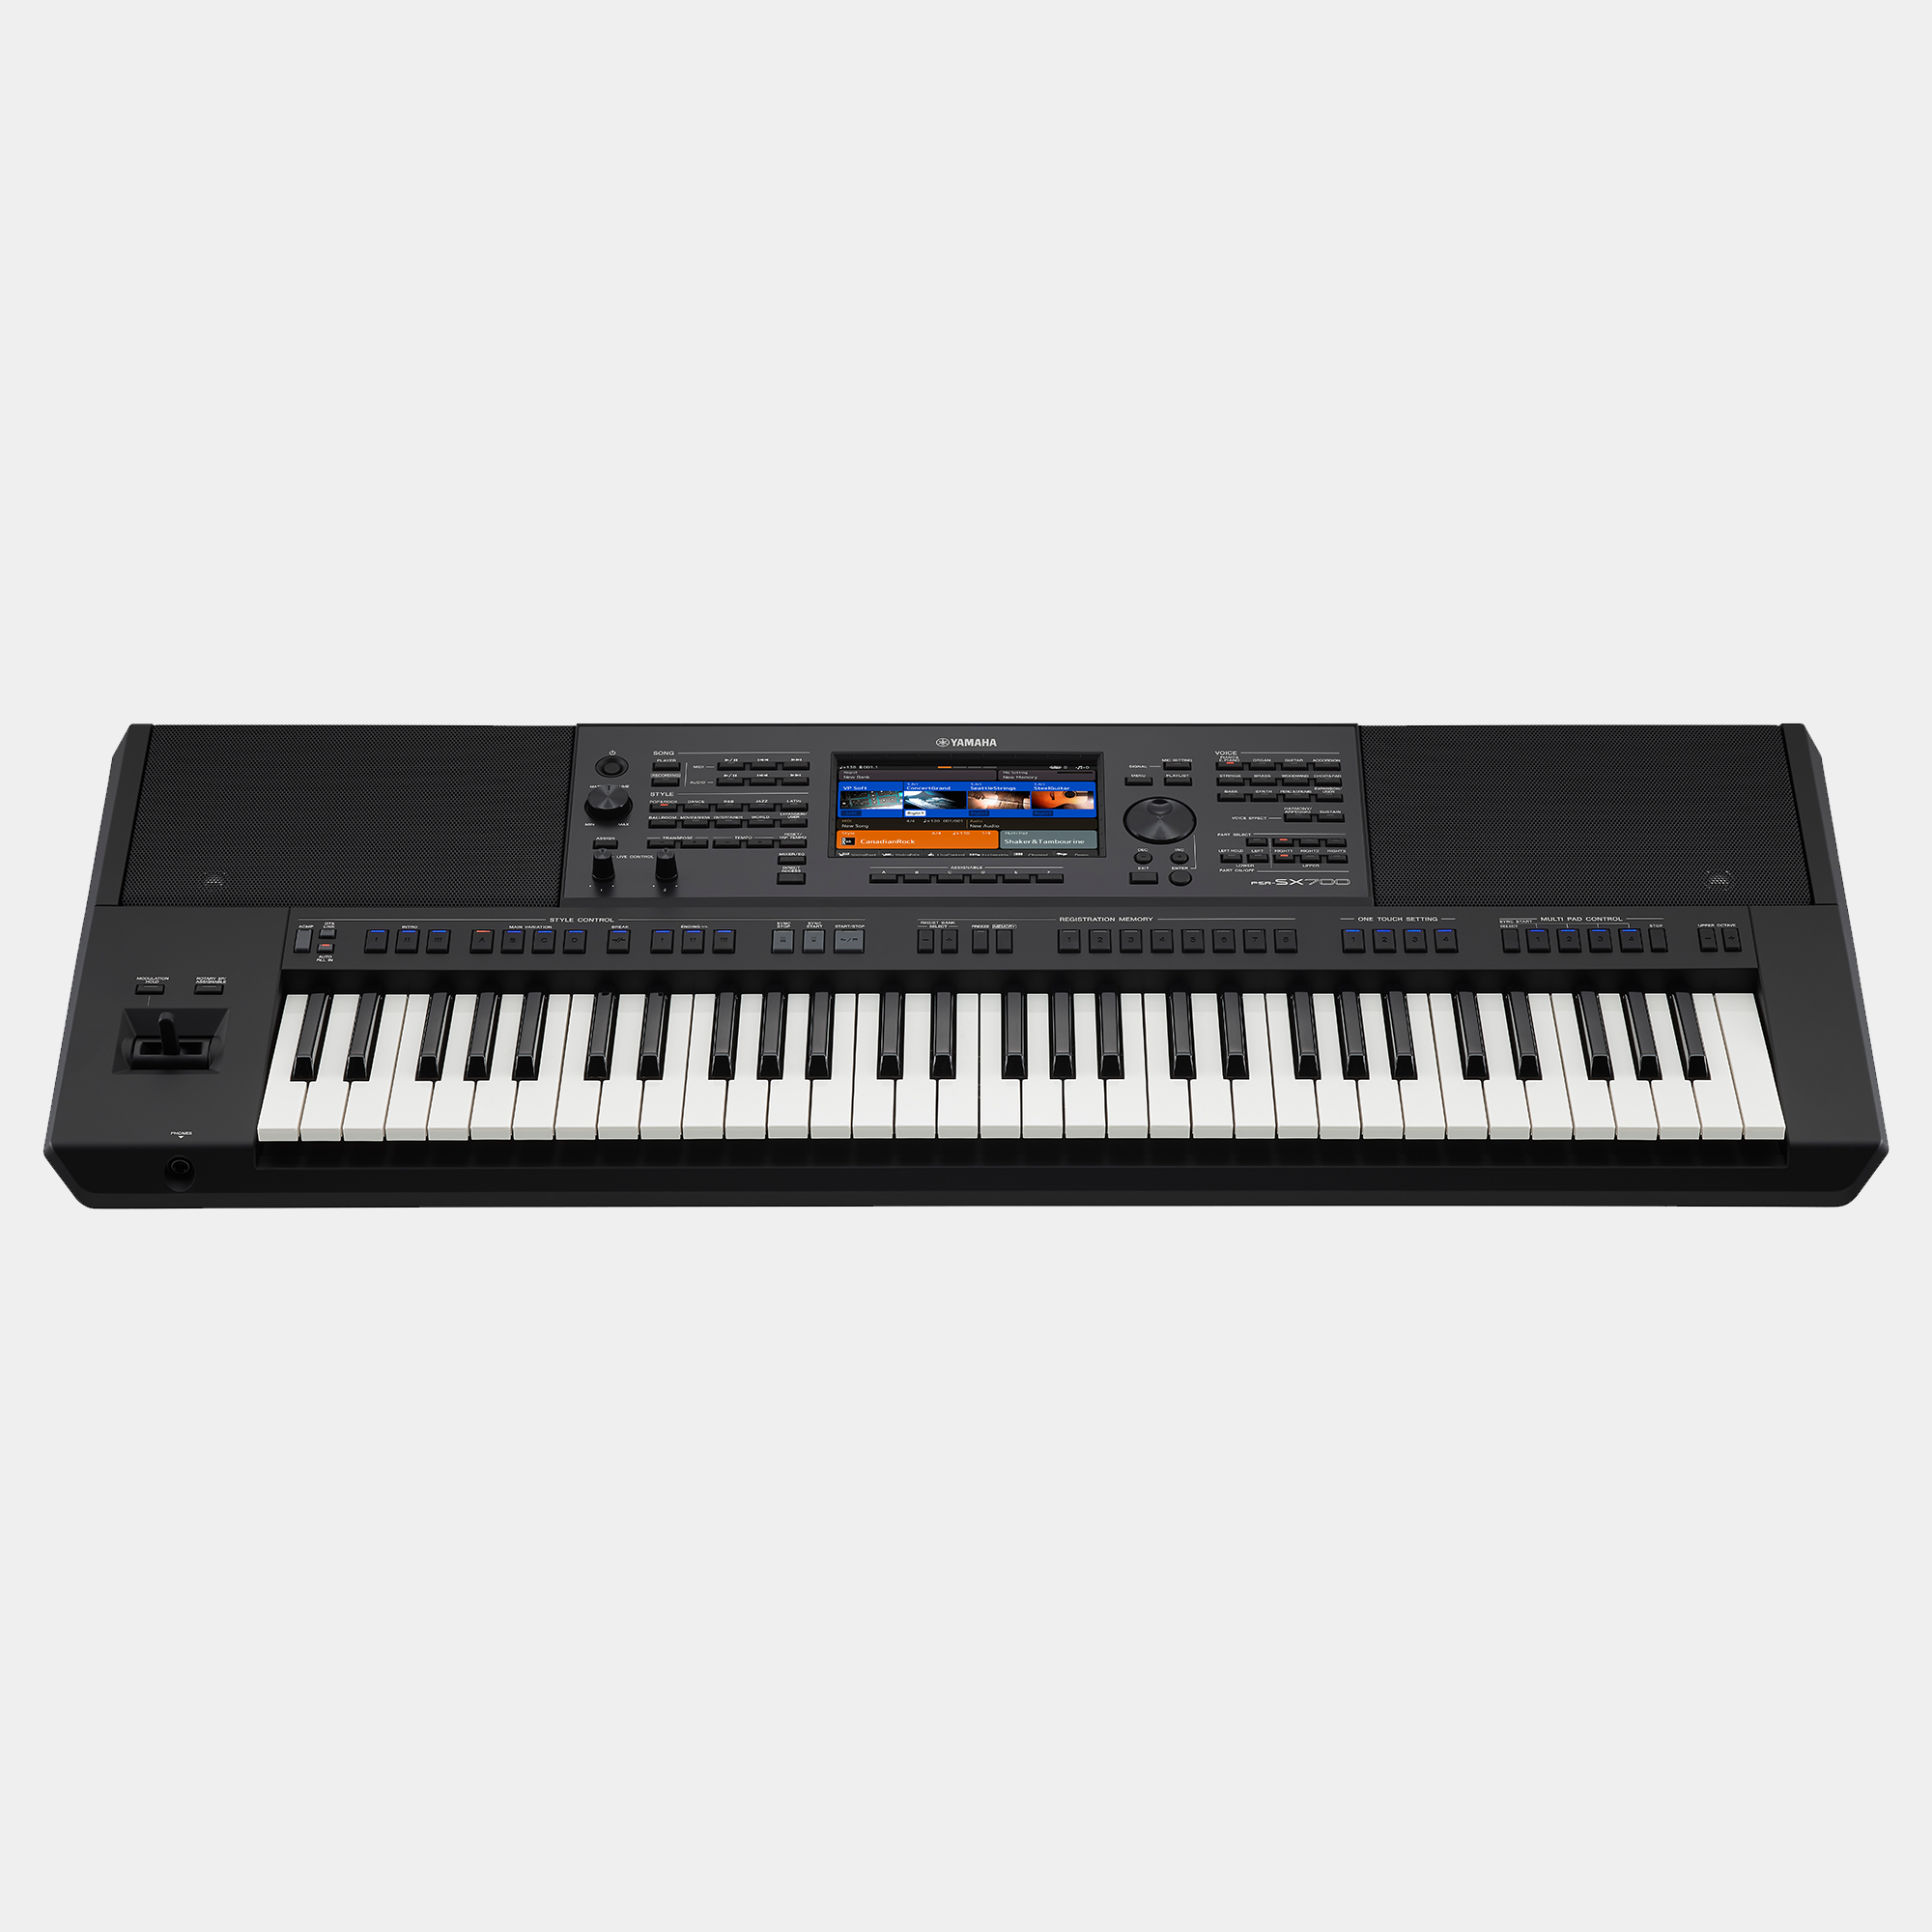 Đàn Organ điện tử, Keyboard Workstation - Yamaha PSR-SX700 (PSR SX700) - Biểu diễn sôi động hơn, bùng nổ hơn - Hàng chính hãng